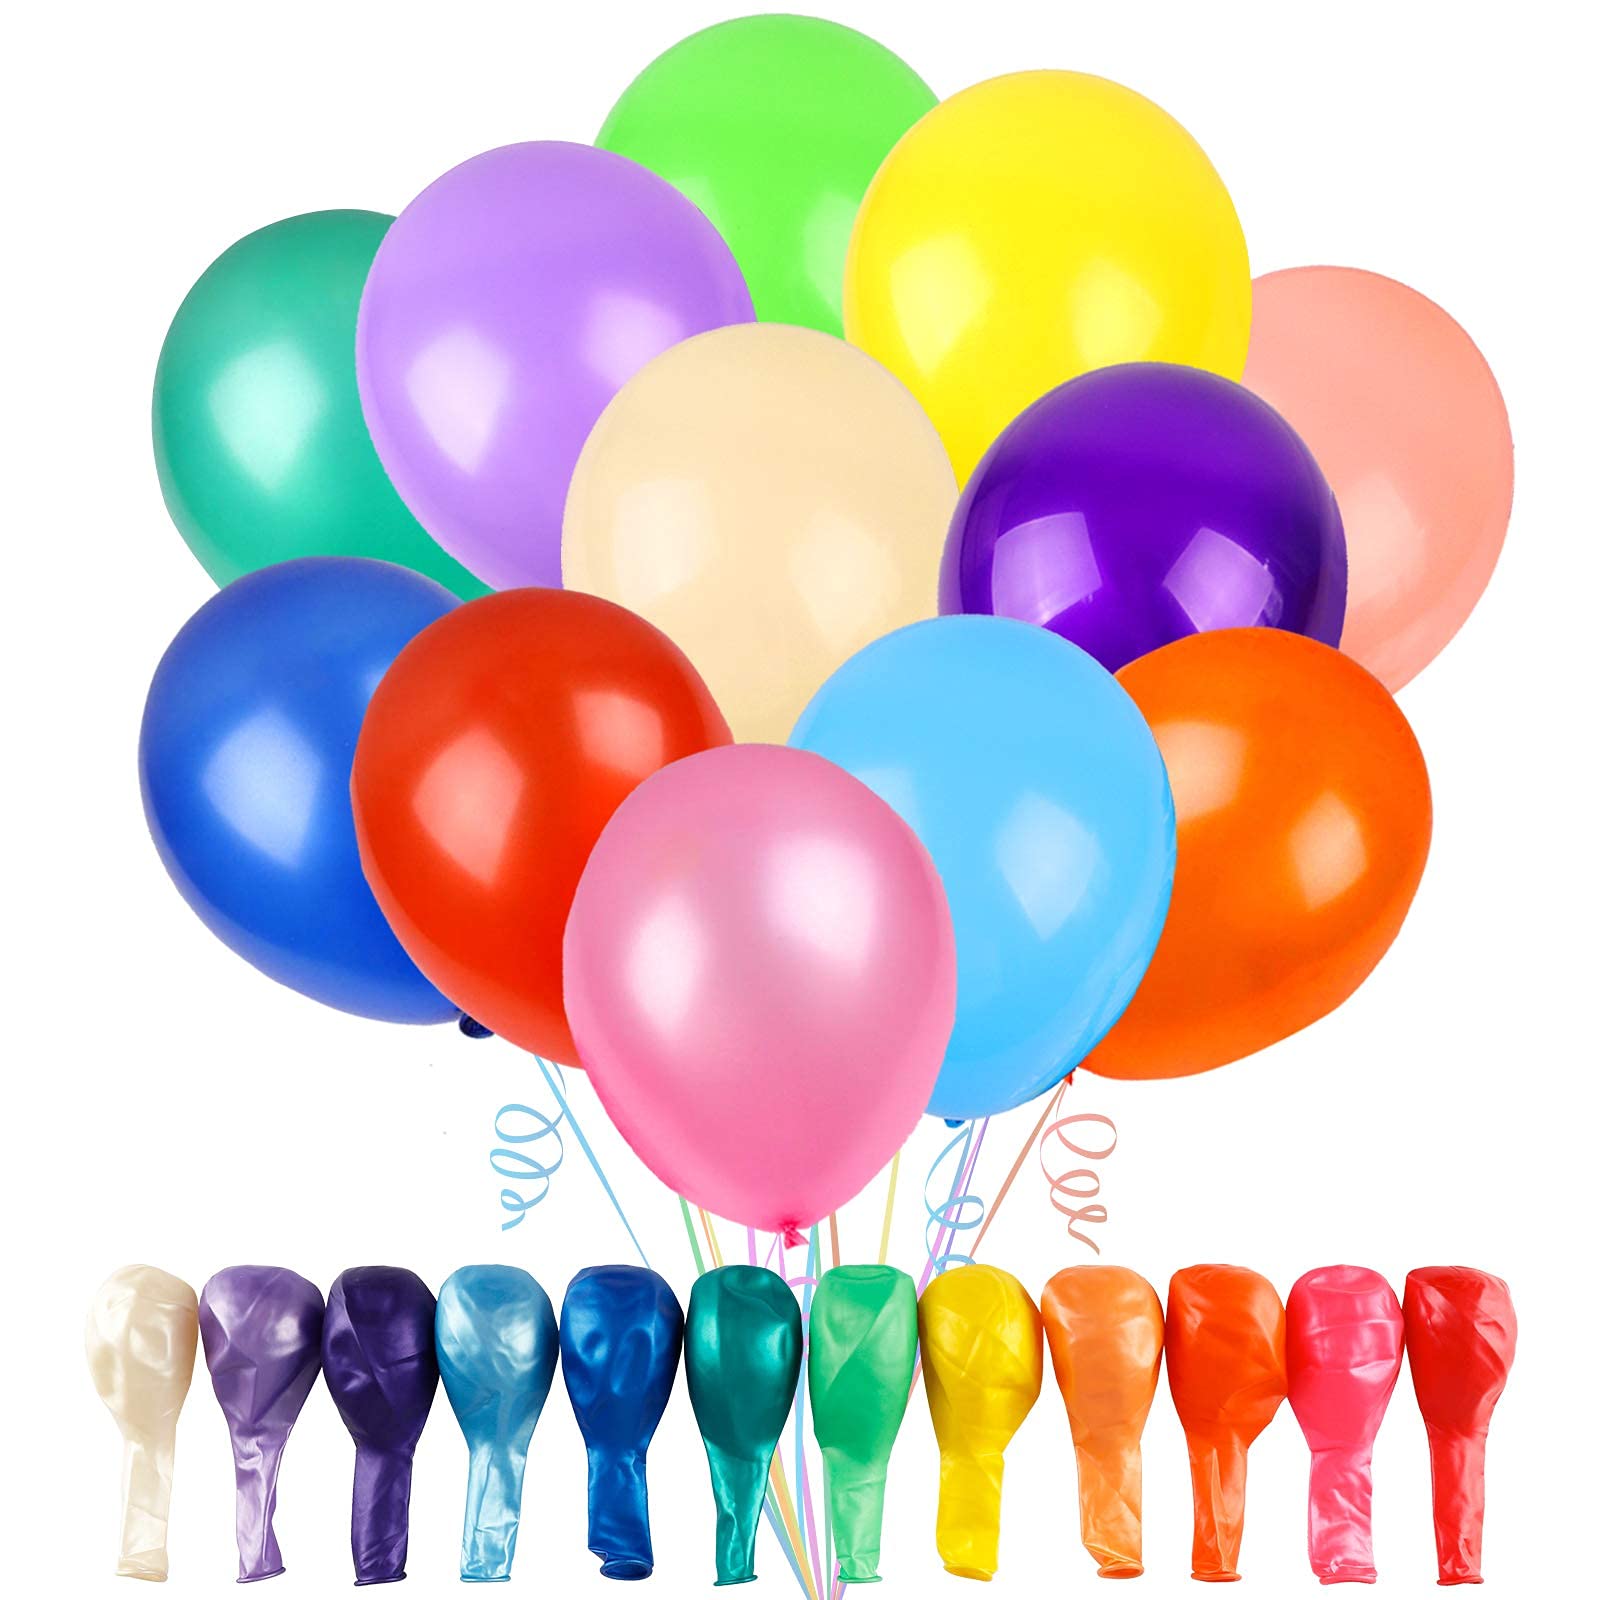 Rubber Balloons Manufacturer